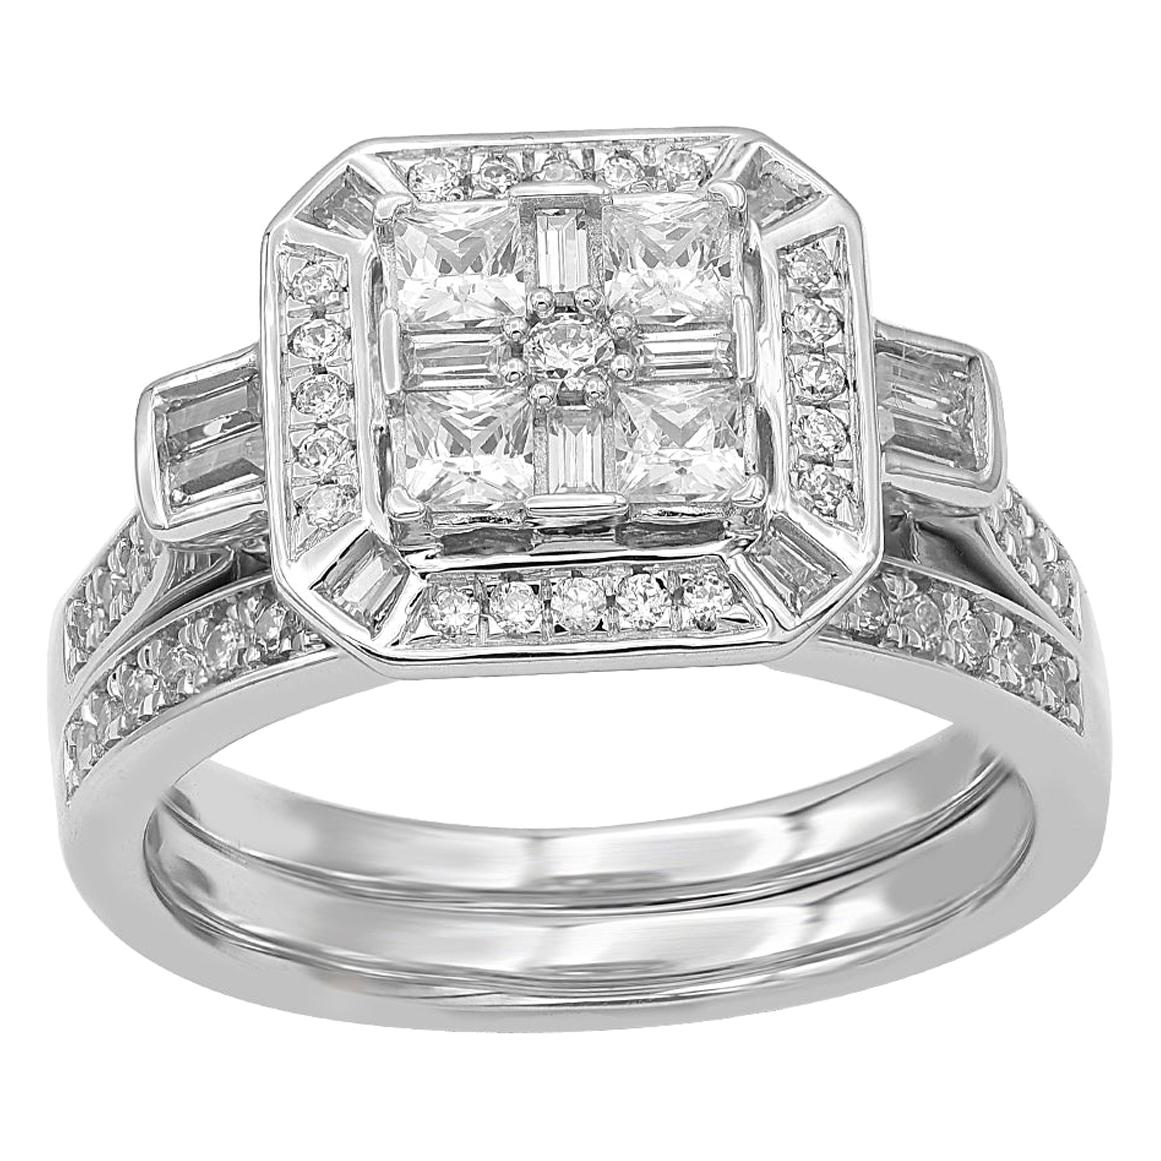 TJD 1.0 Carat Round and Baguette Diamond 14 Karat White Gold Bridal Set Ring